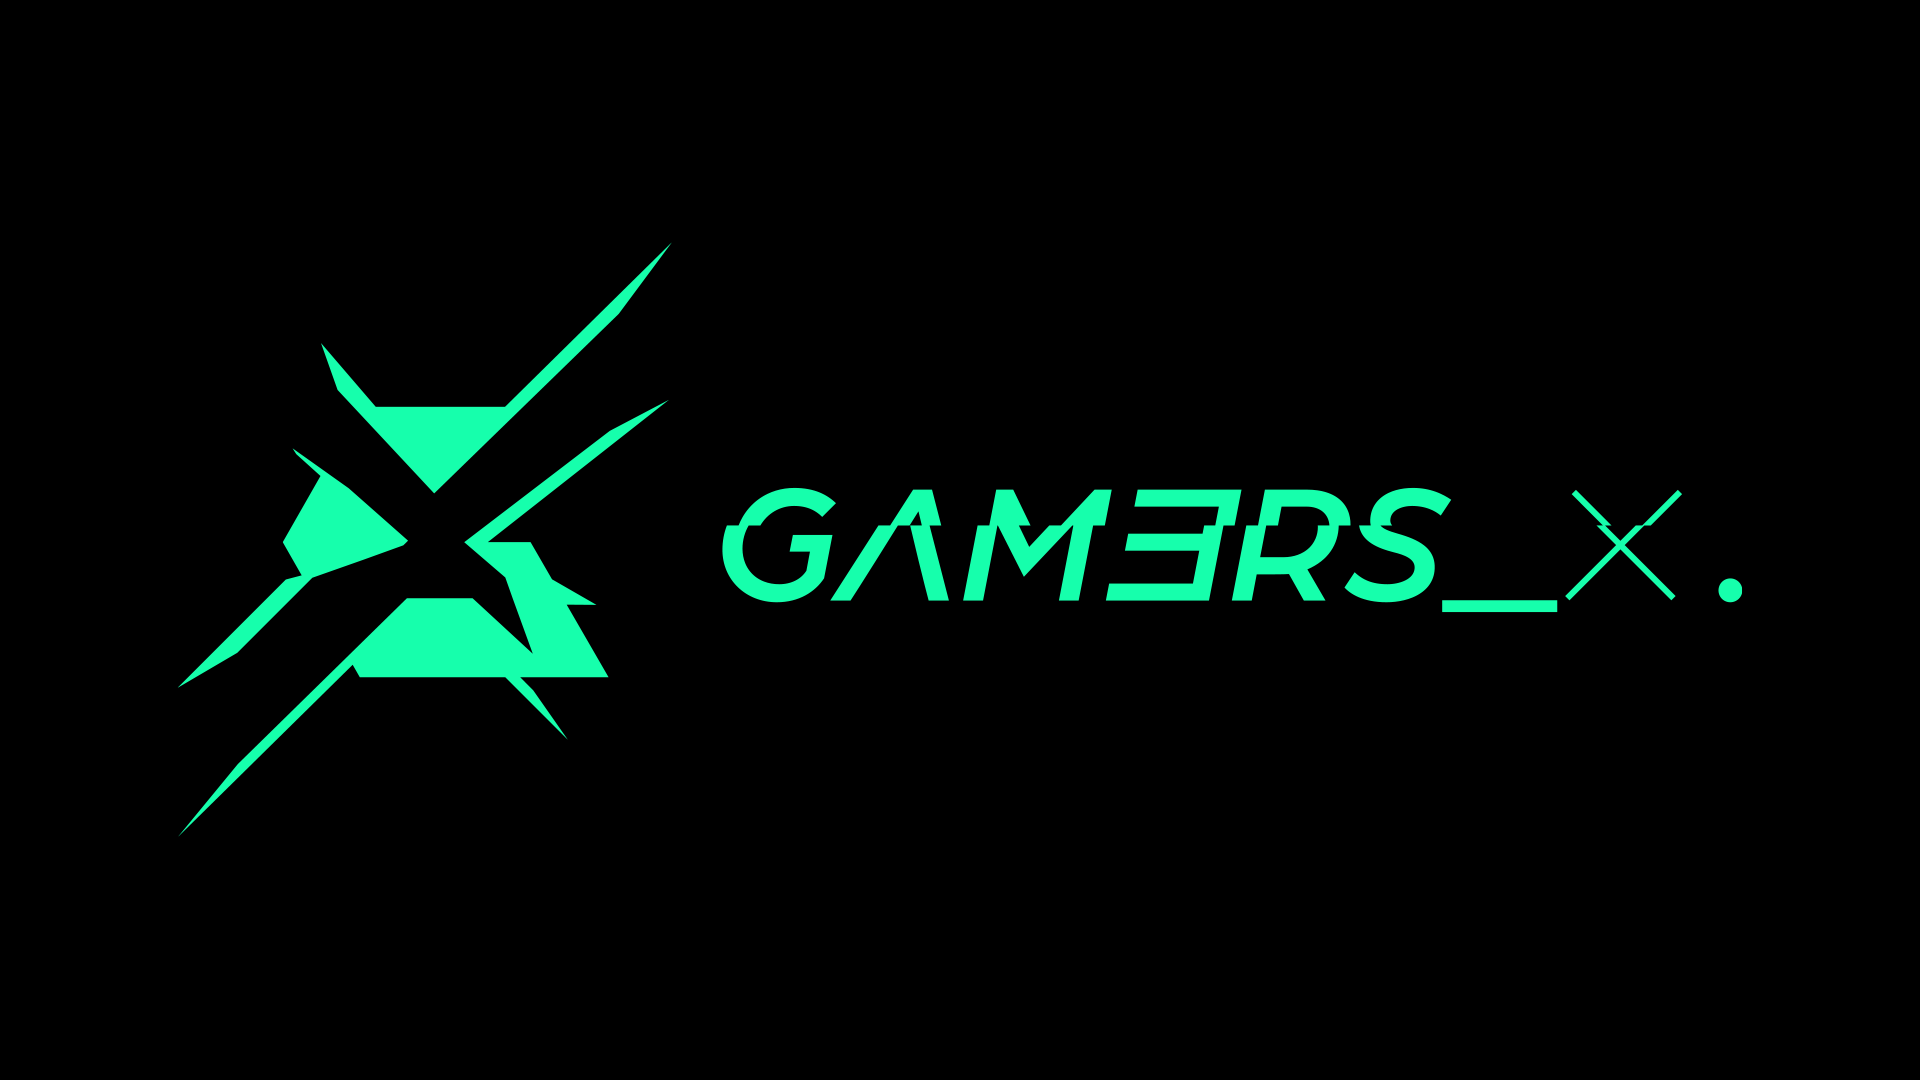 GAM3RS_X – Noul brand Fantasyexpo și planurile sale pentru 2022